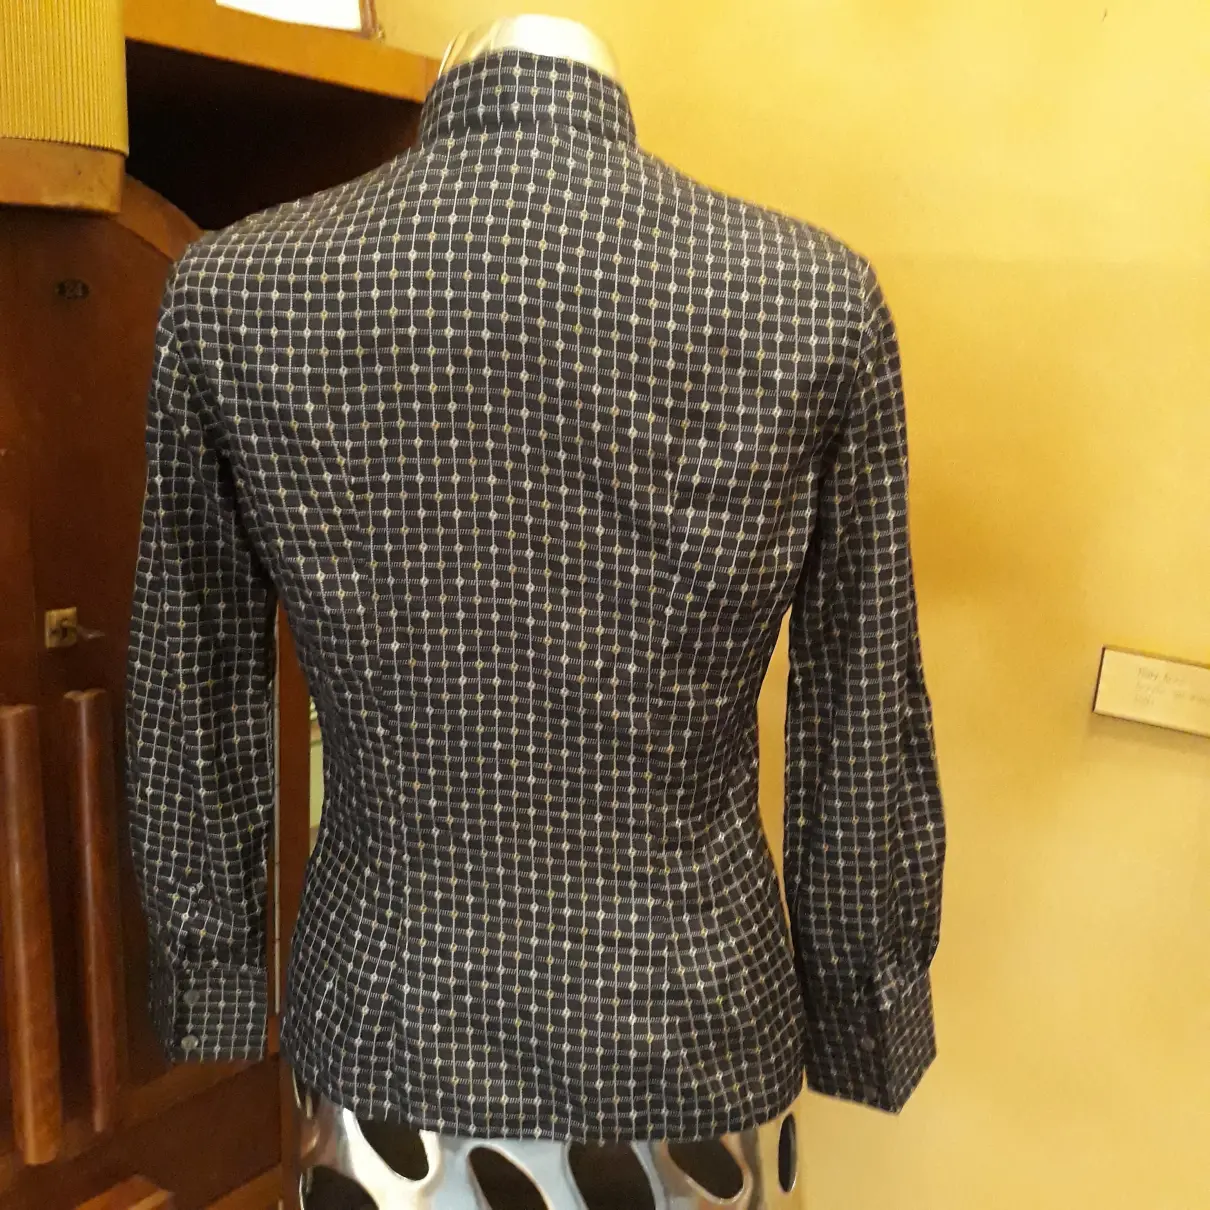 Buy Valentino Garavani Silk shirt online - Vintage